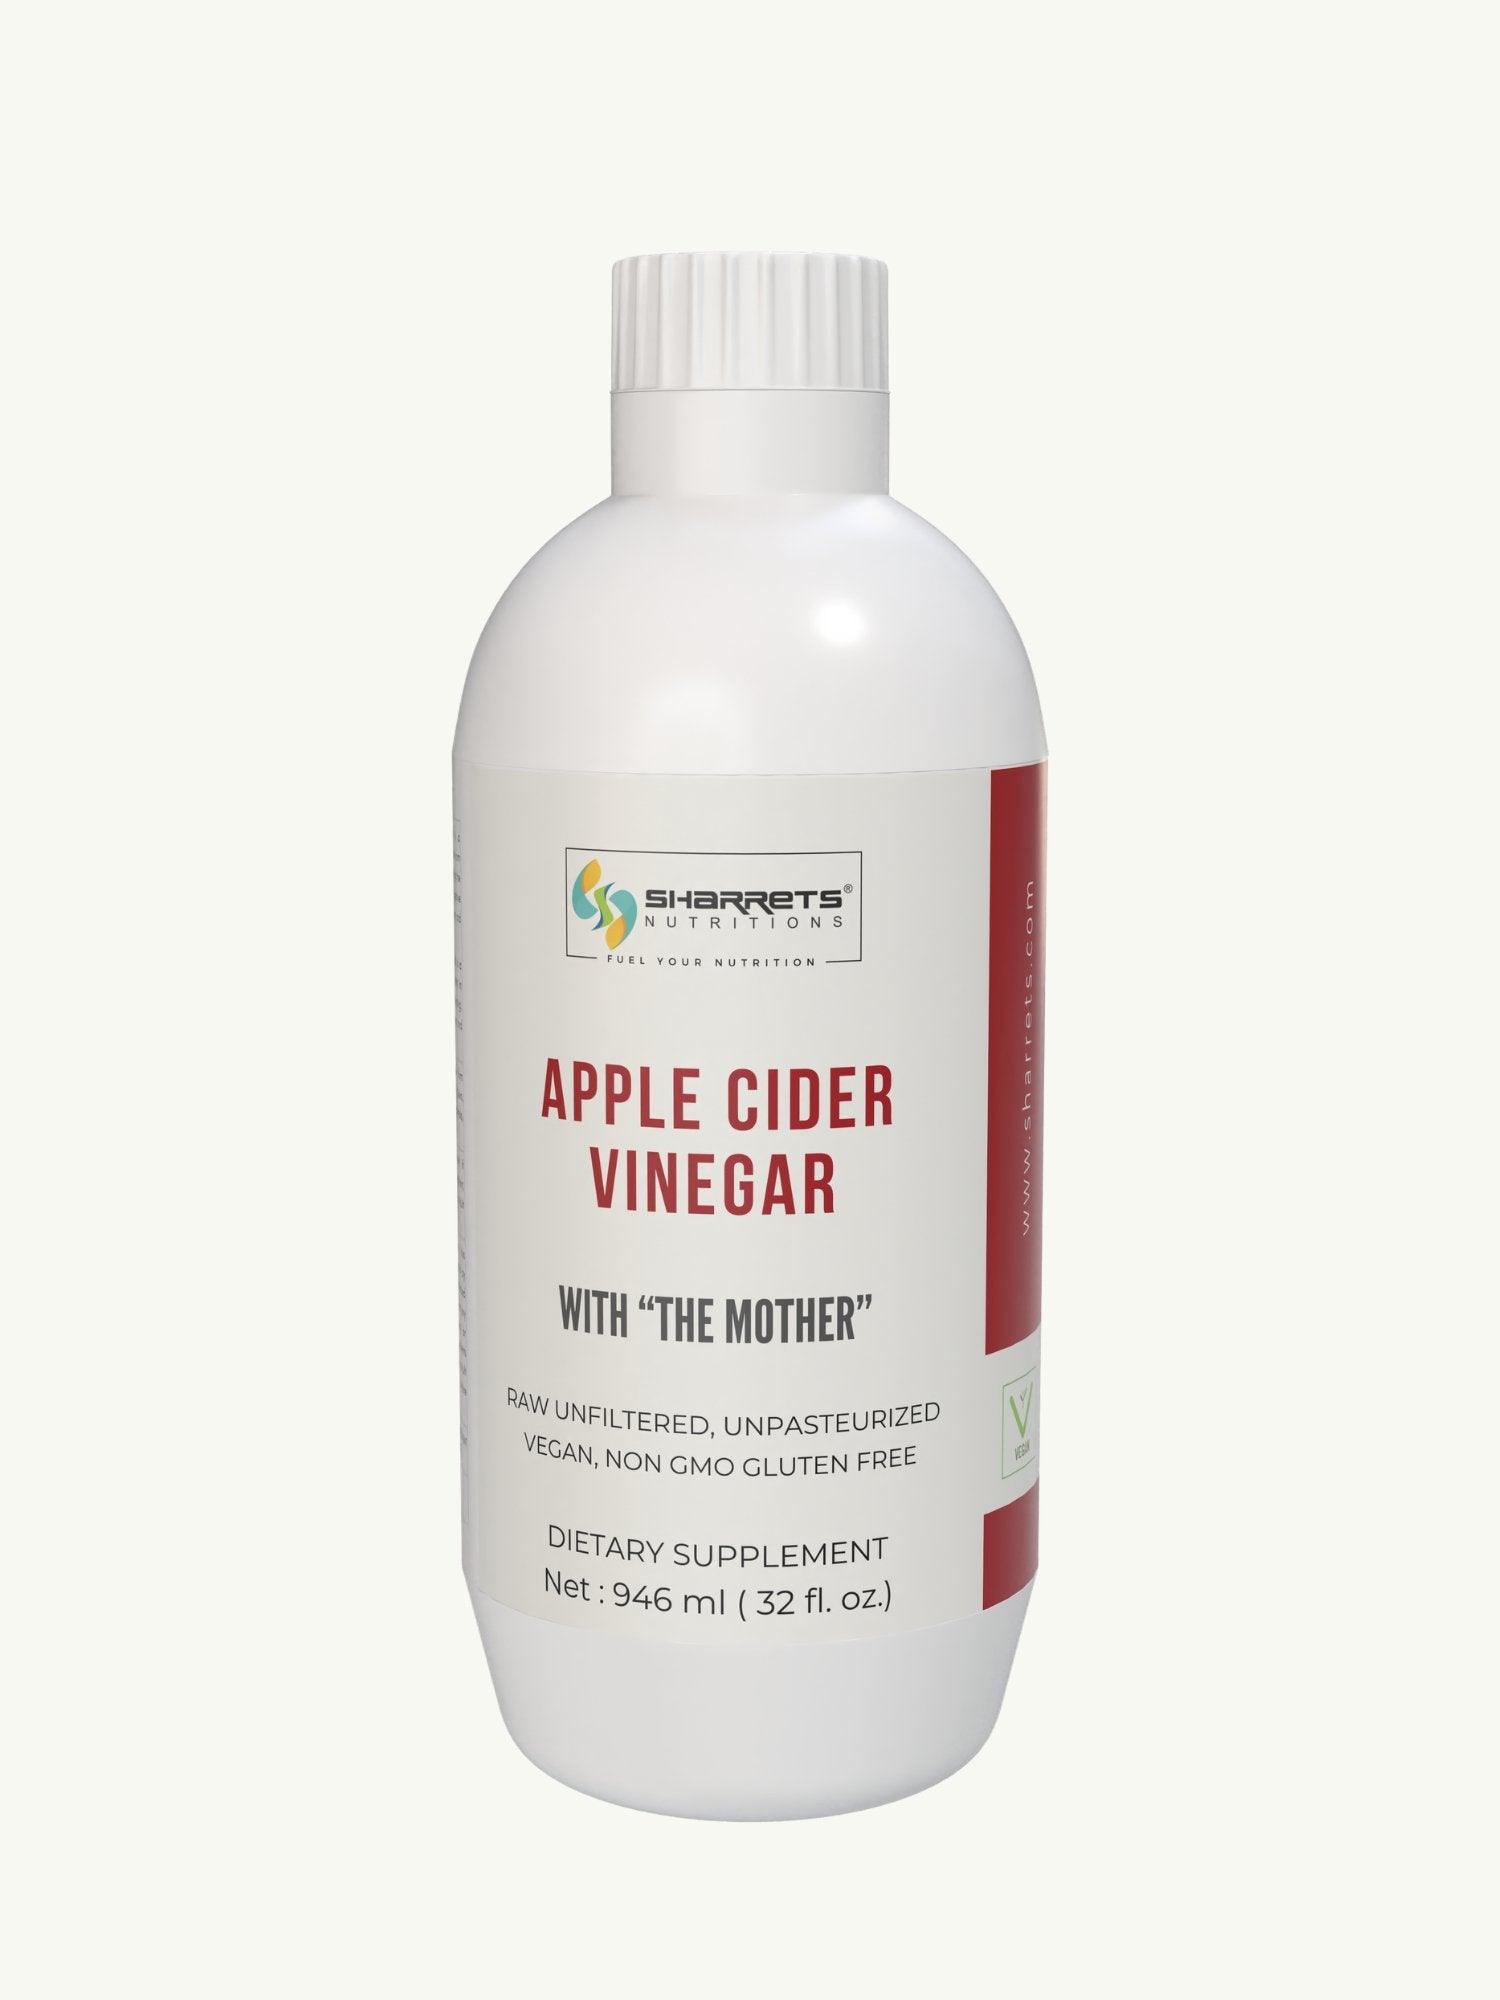 Apple Cider Vinegar - Sharrets Nutritions LLP